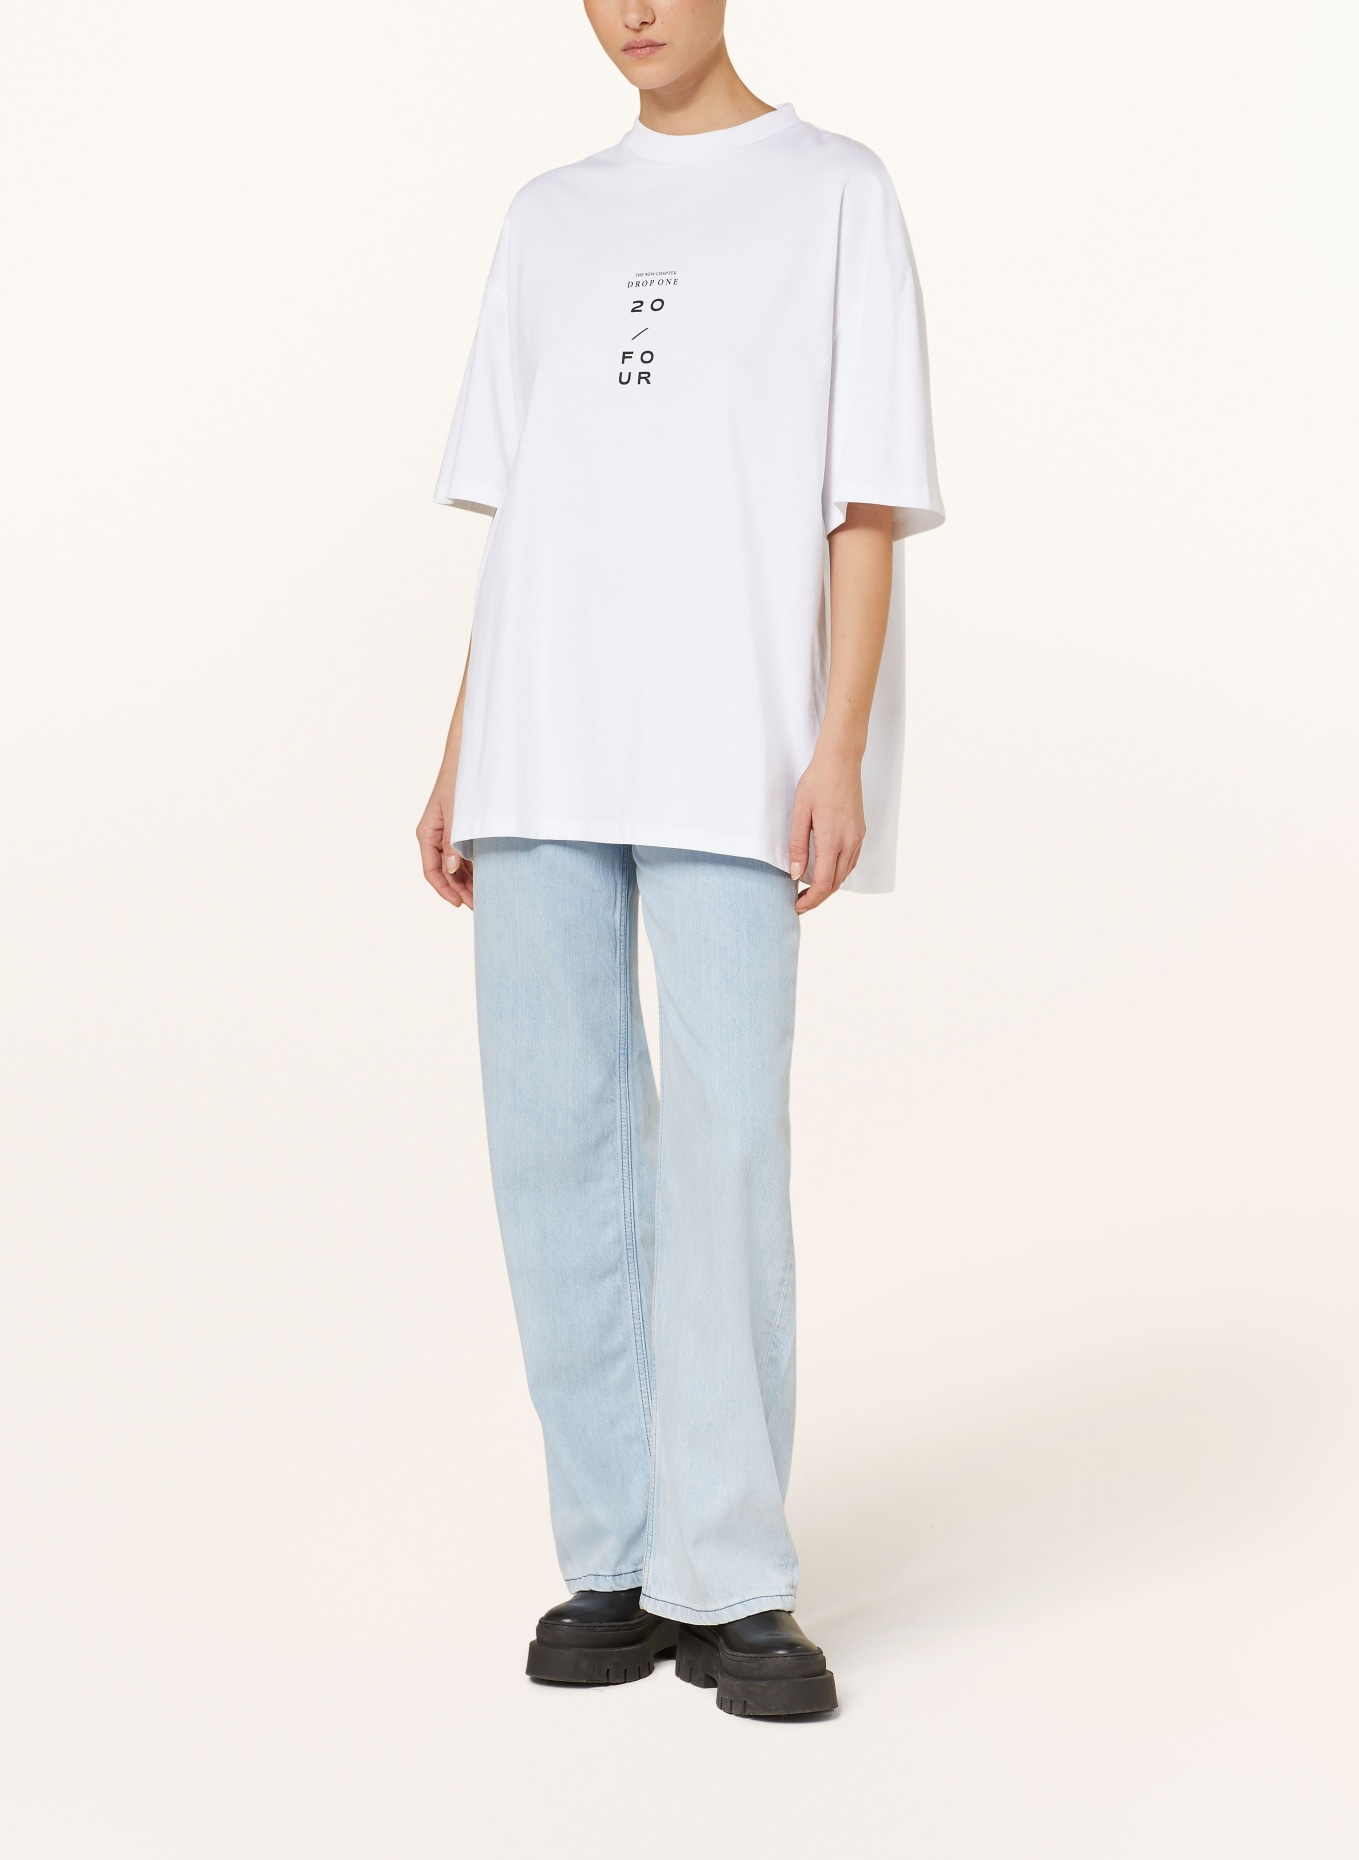 KARO KAUER Oversized shirt, Color: WHITE (Image 2)